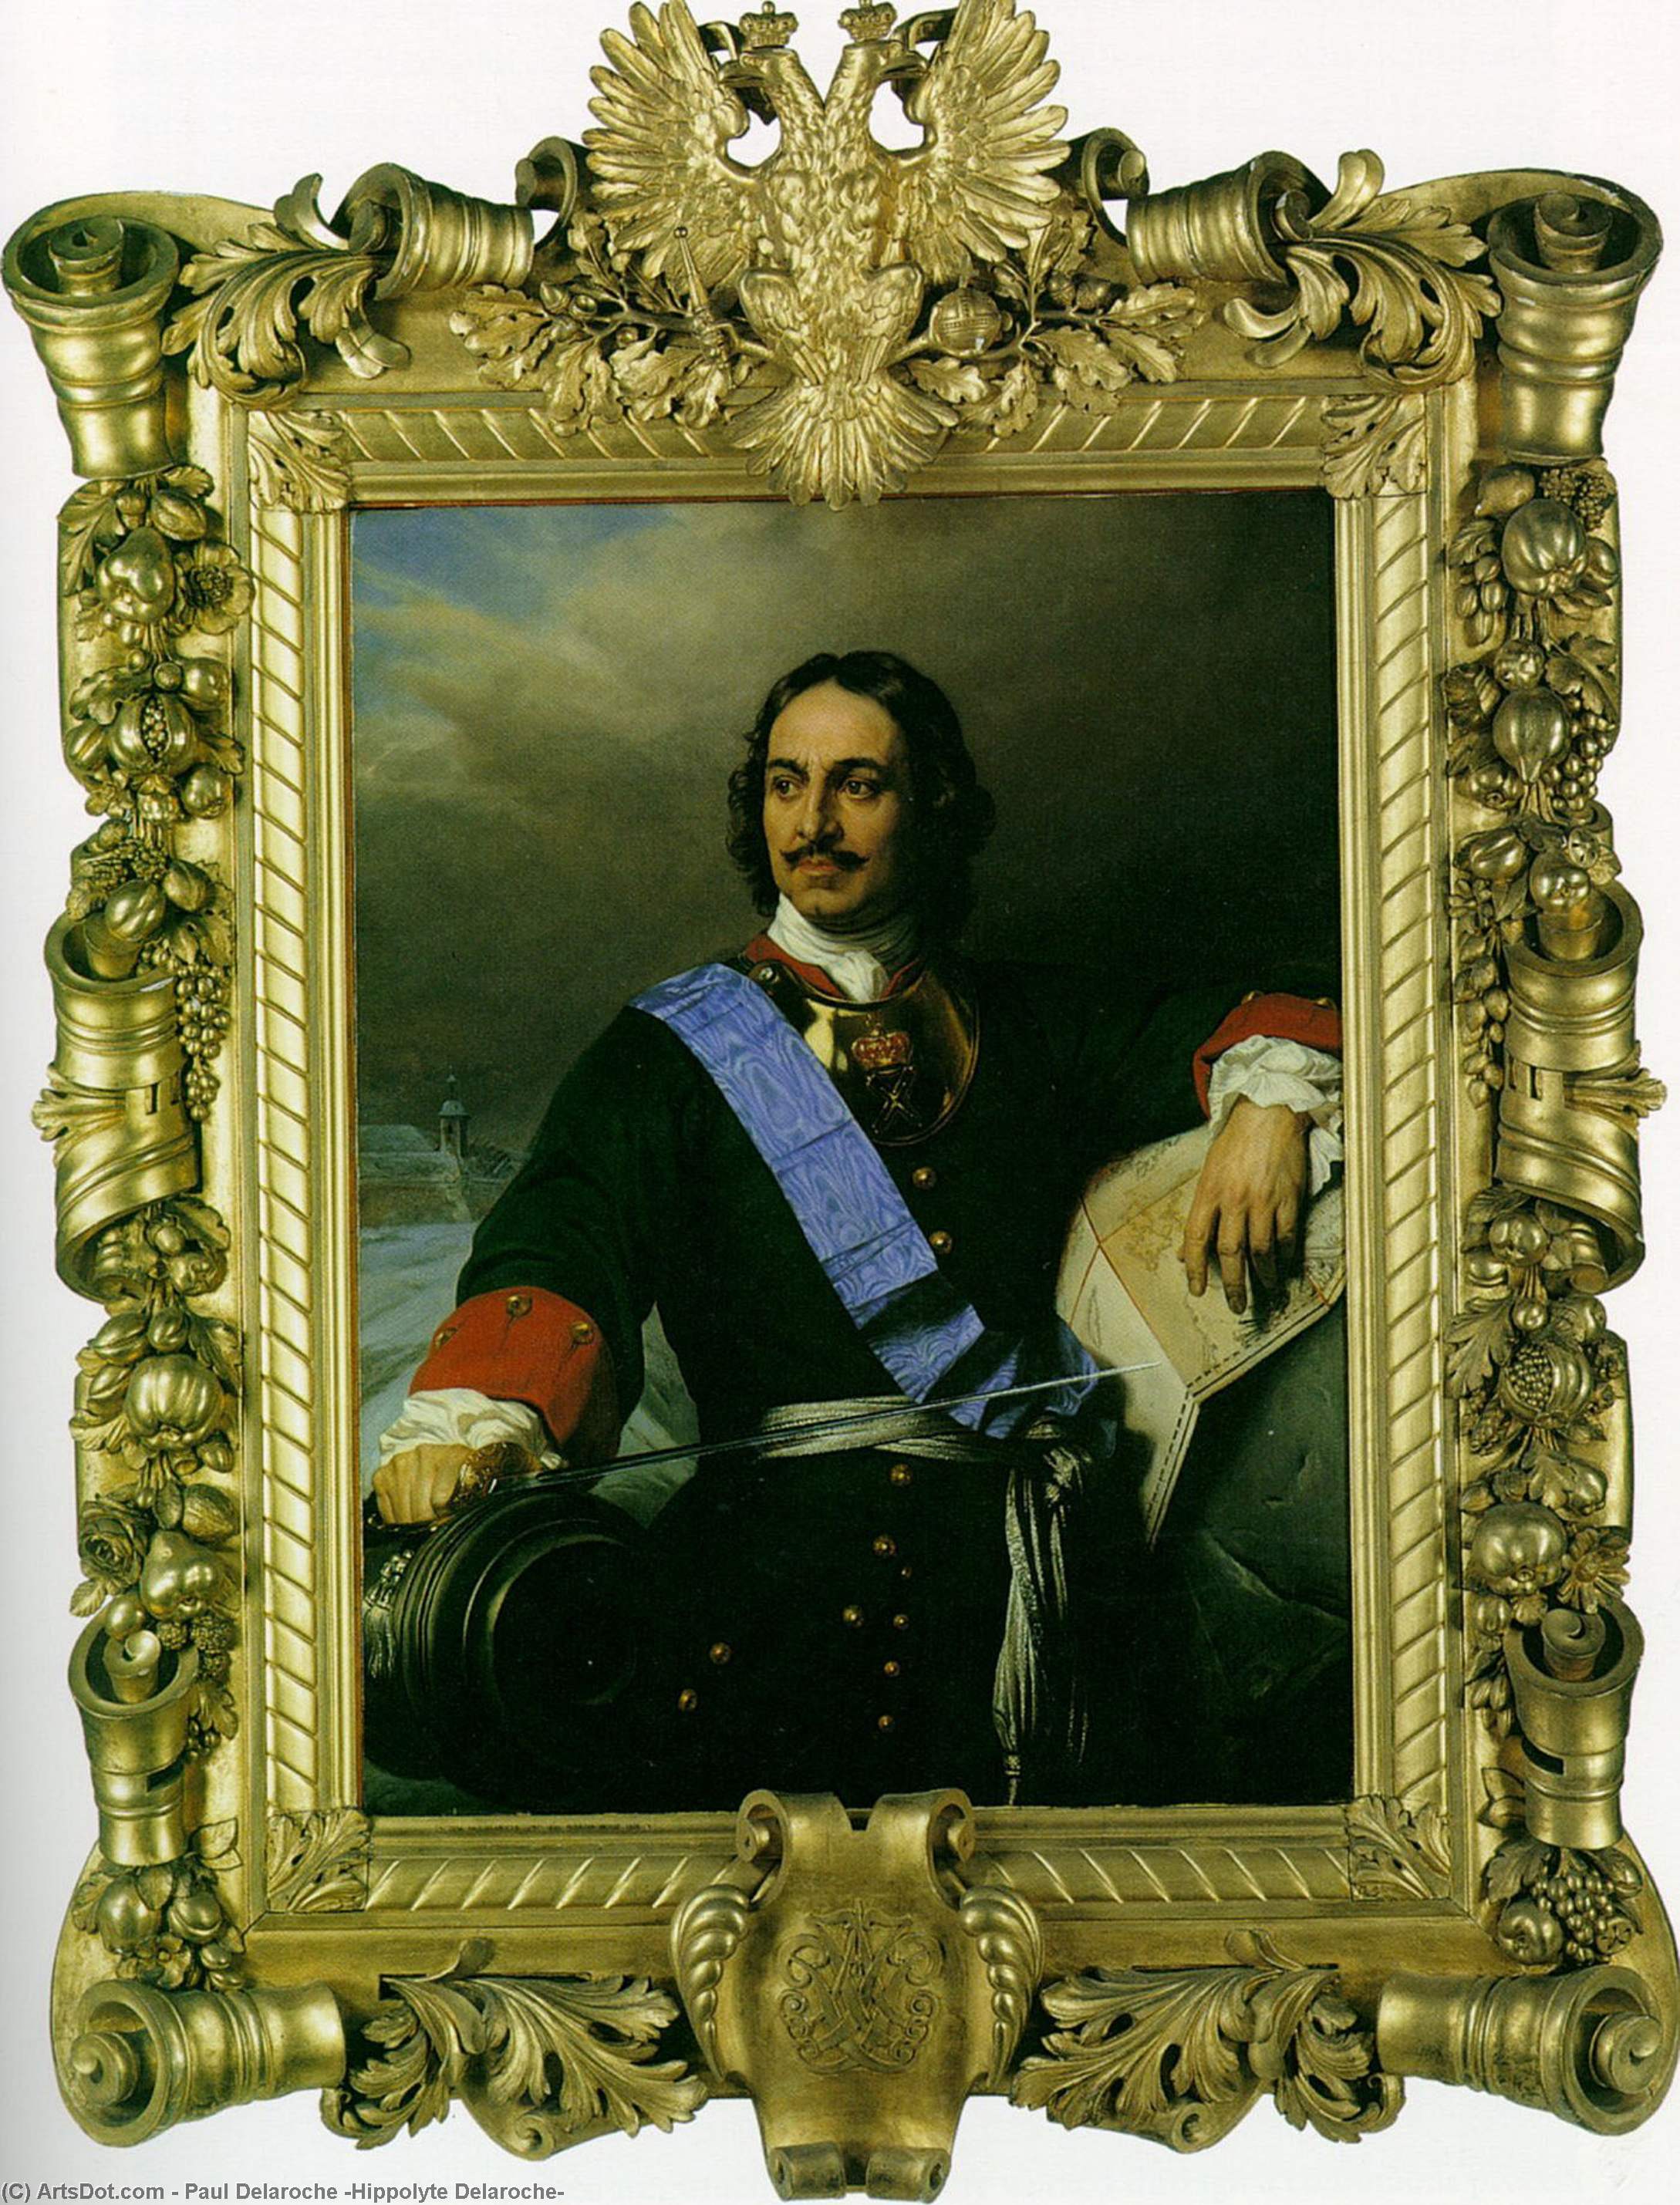 WikiOO.org - Encyclopedia of Fine Arts - Lukisan, Artwork Paul Delaroche (Hippolyte Delaroche) - Peter the Great of Russia